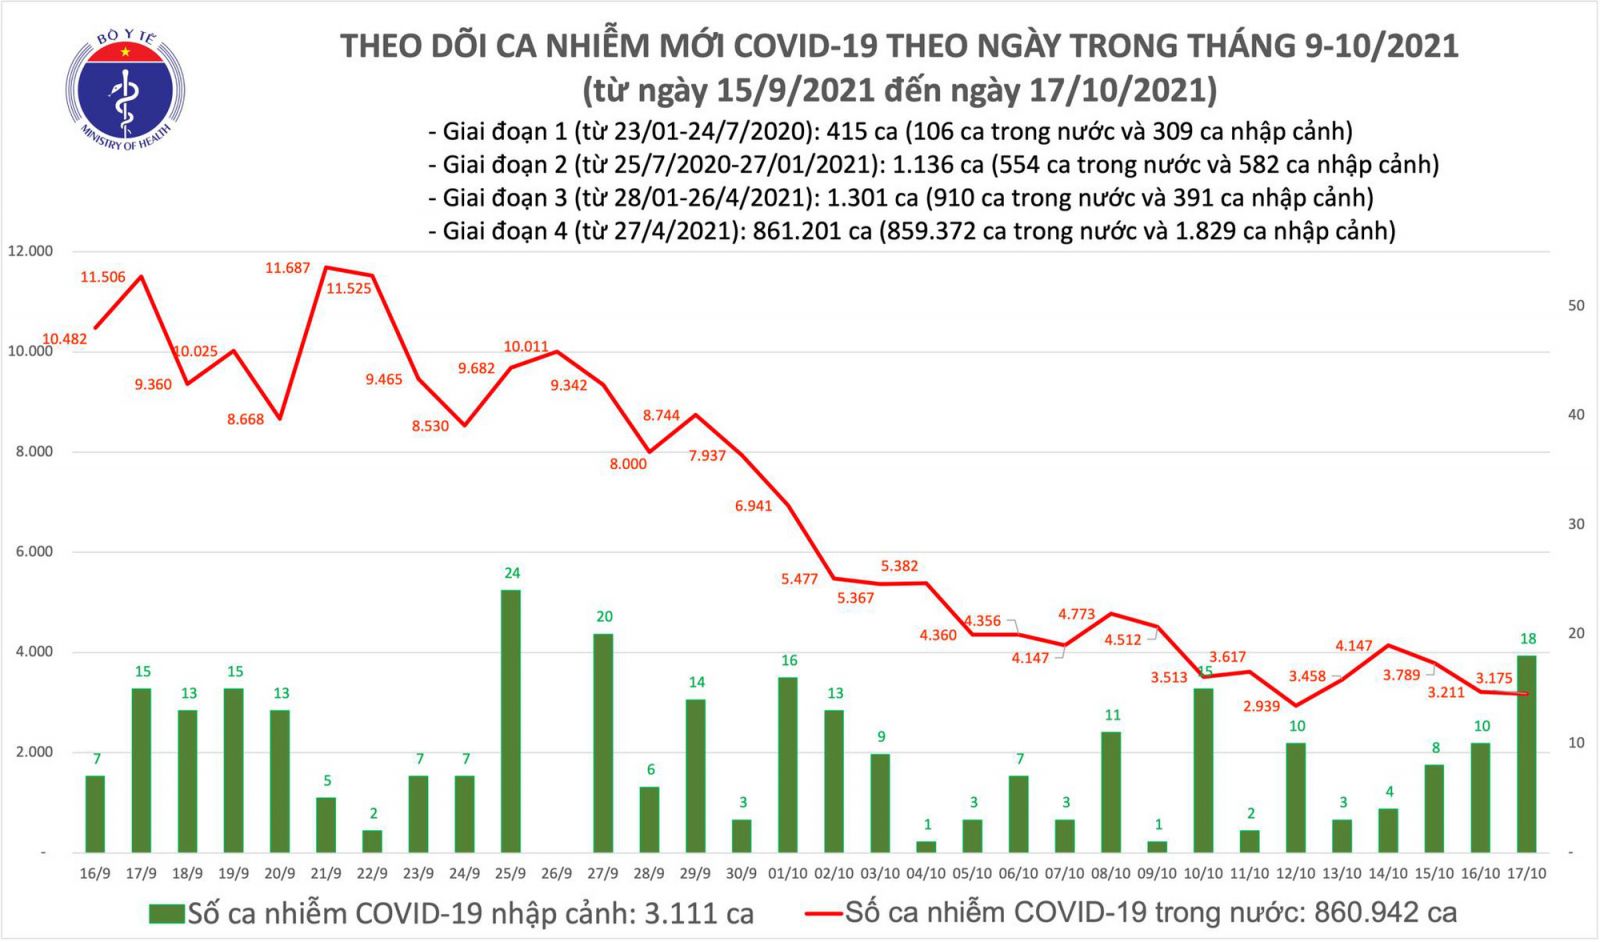 Hôm nay, có 3.193 ca mắc COVID-19, TP HCM 1.059 ca